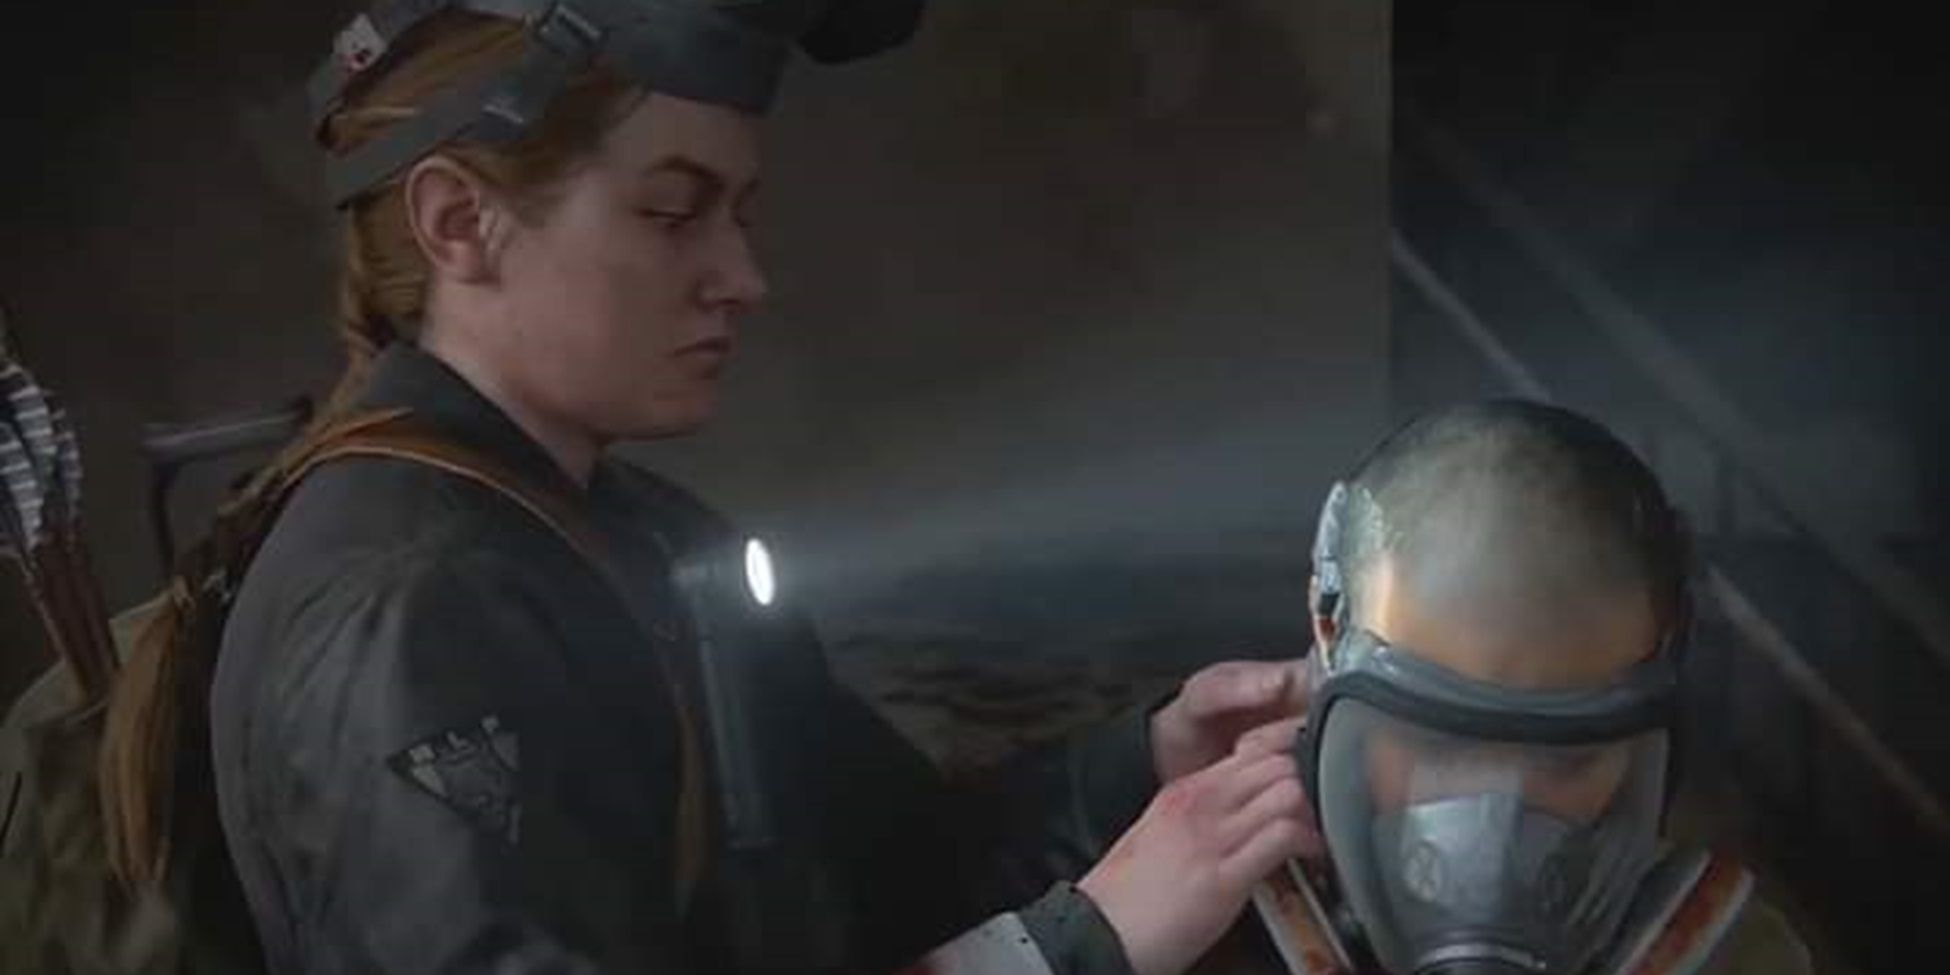 Abby ajuda Lev com sua máscara de gás em The Last of Us Part II